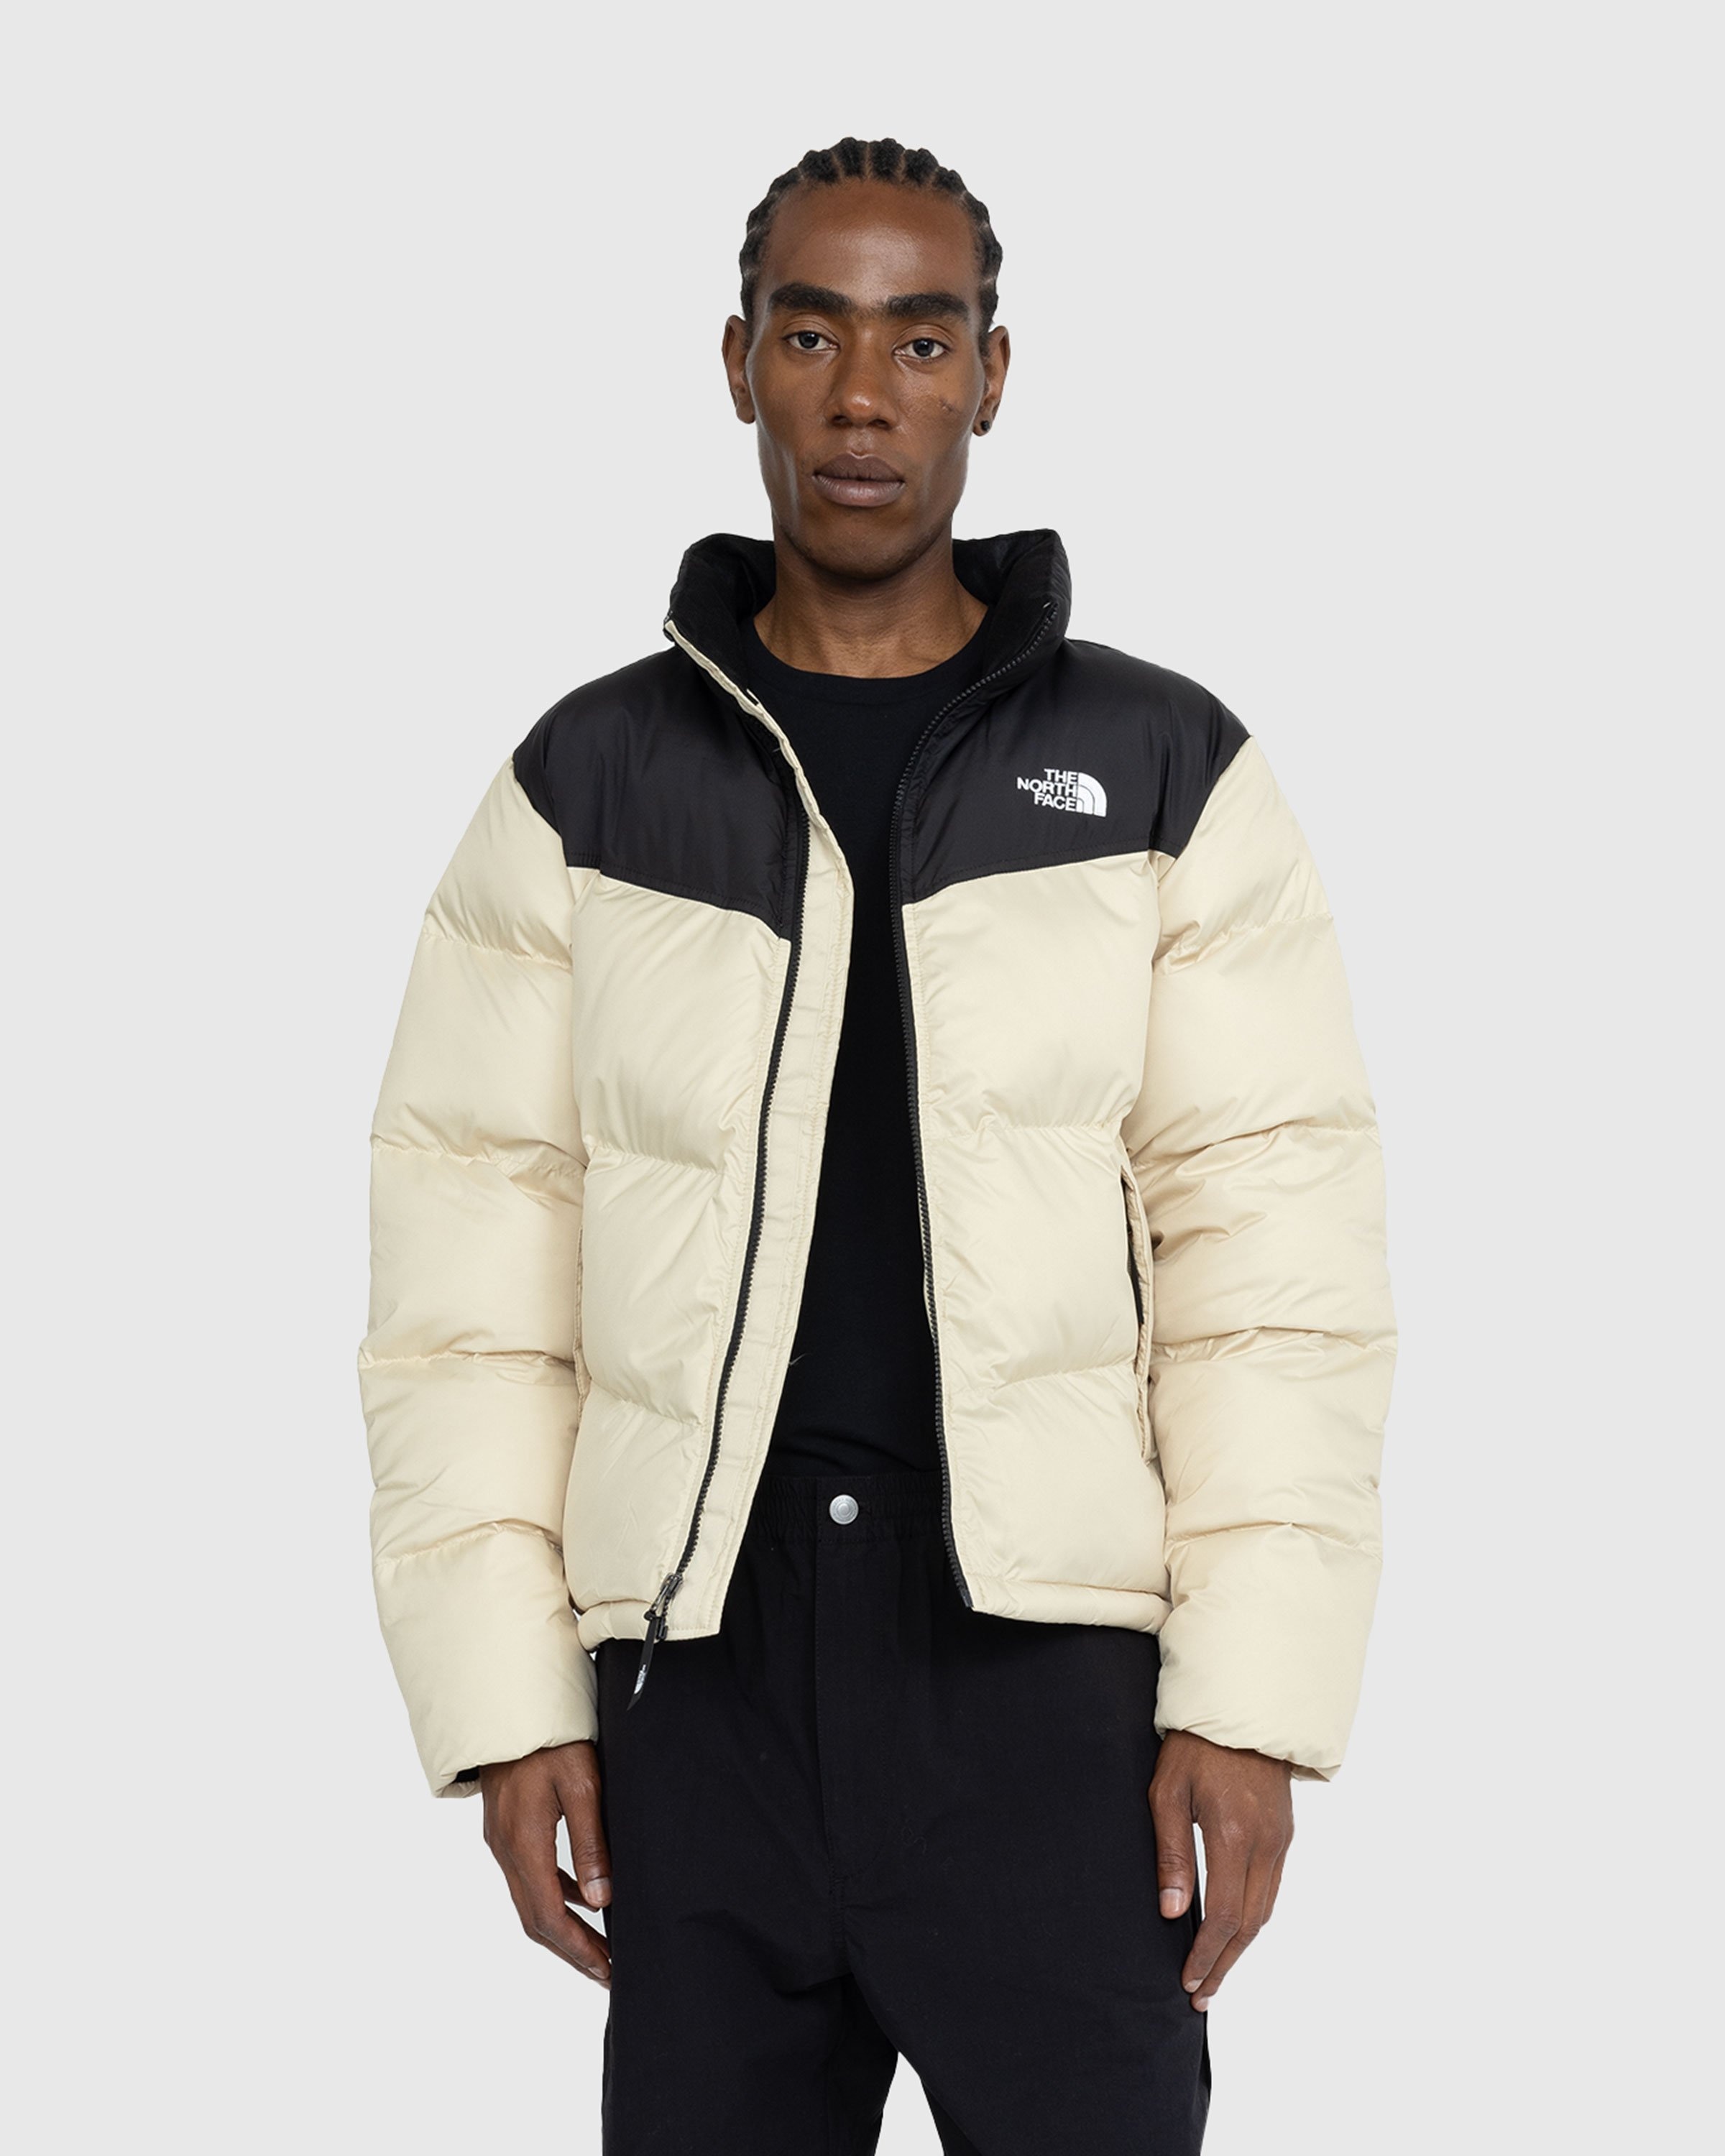 The North Face – Saikuru Jacket Beige | Highsnobiety Shop